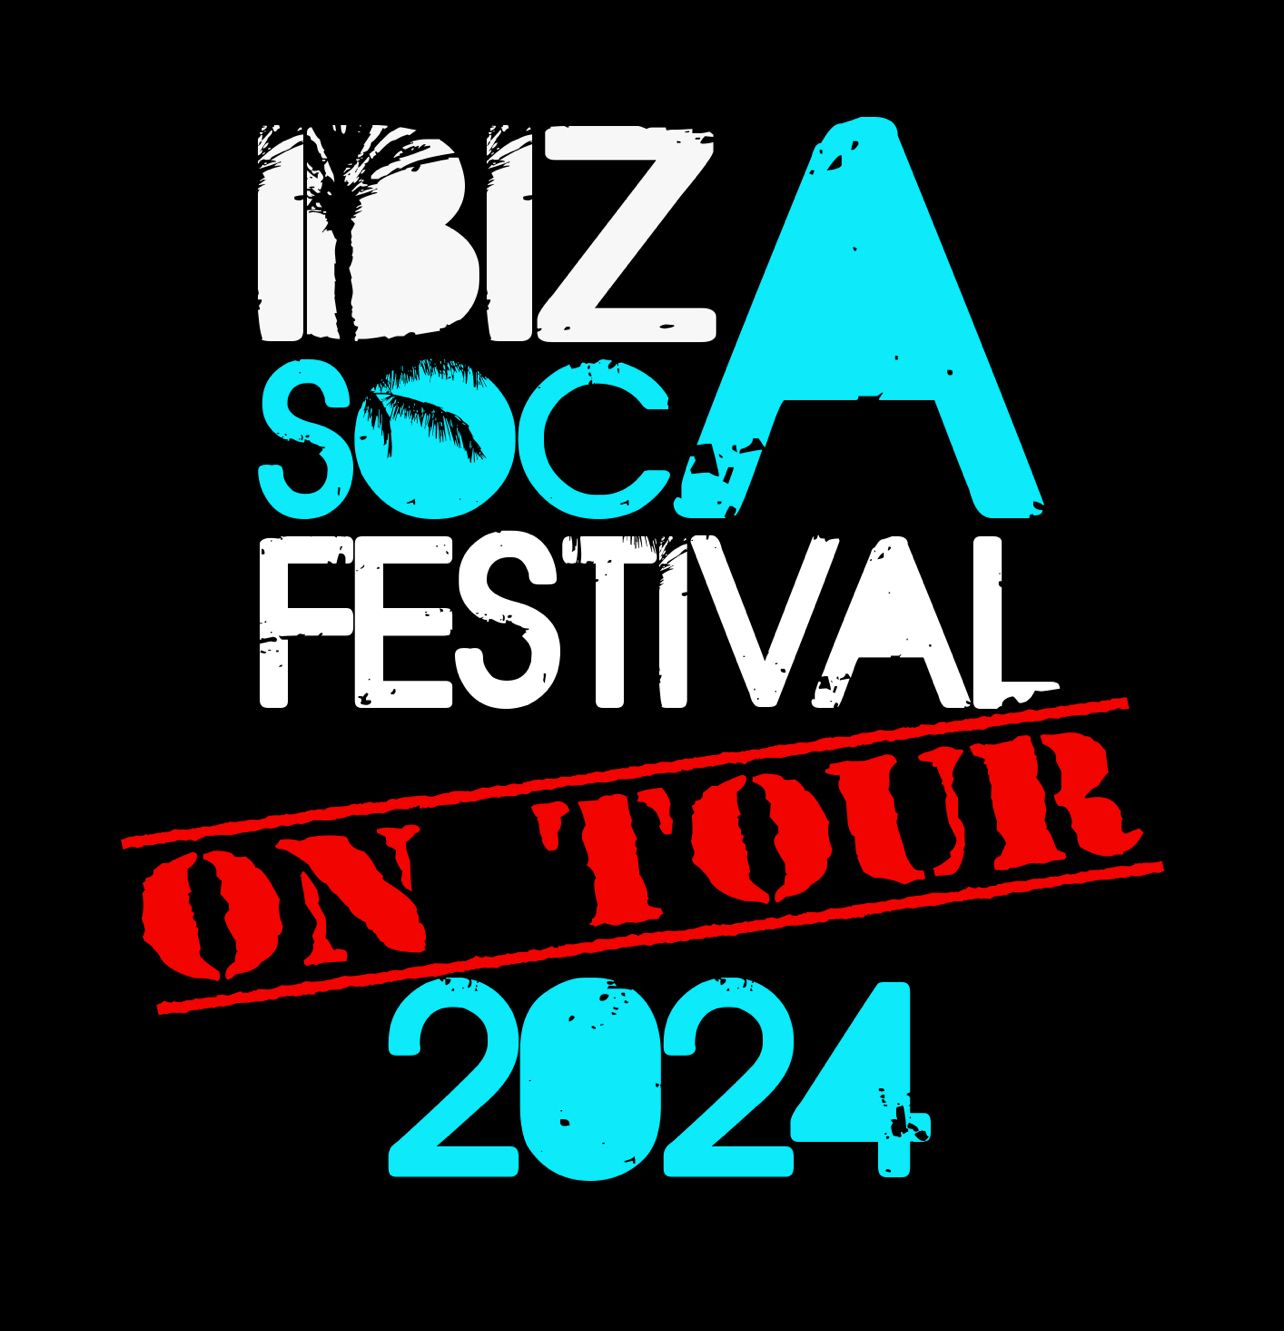 Ibiza Soca Festival